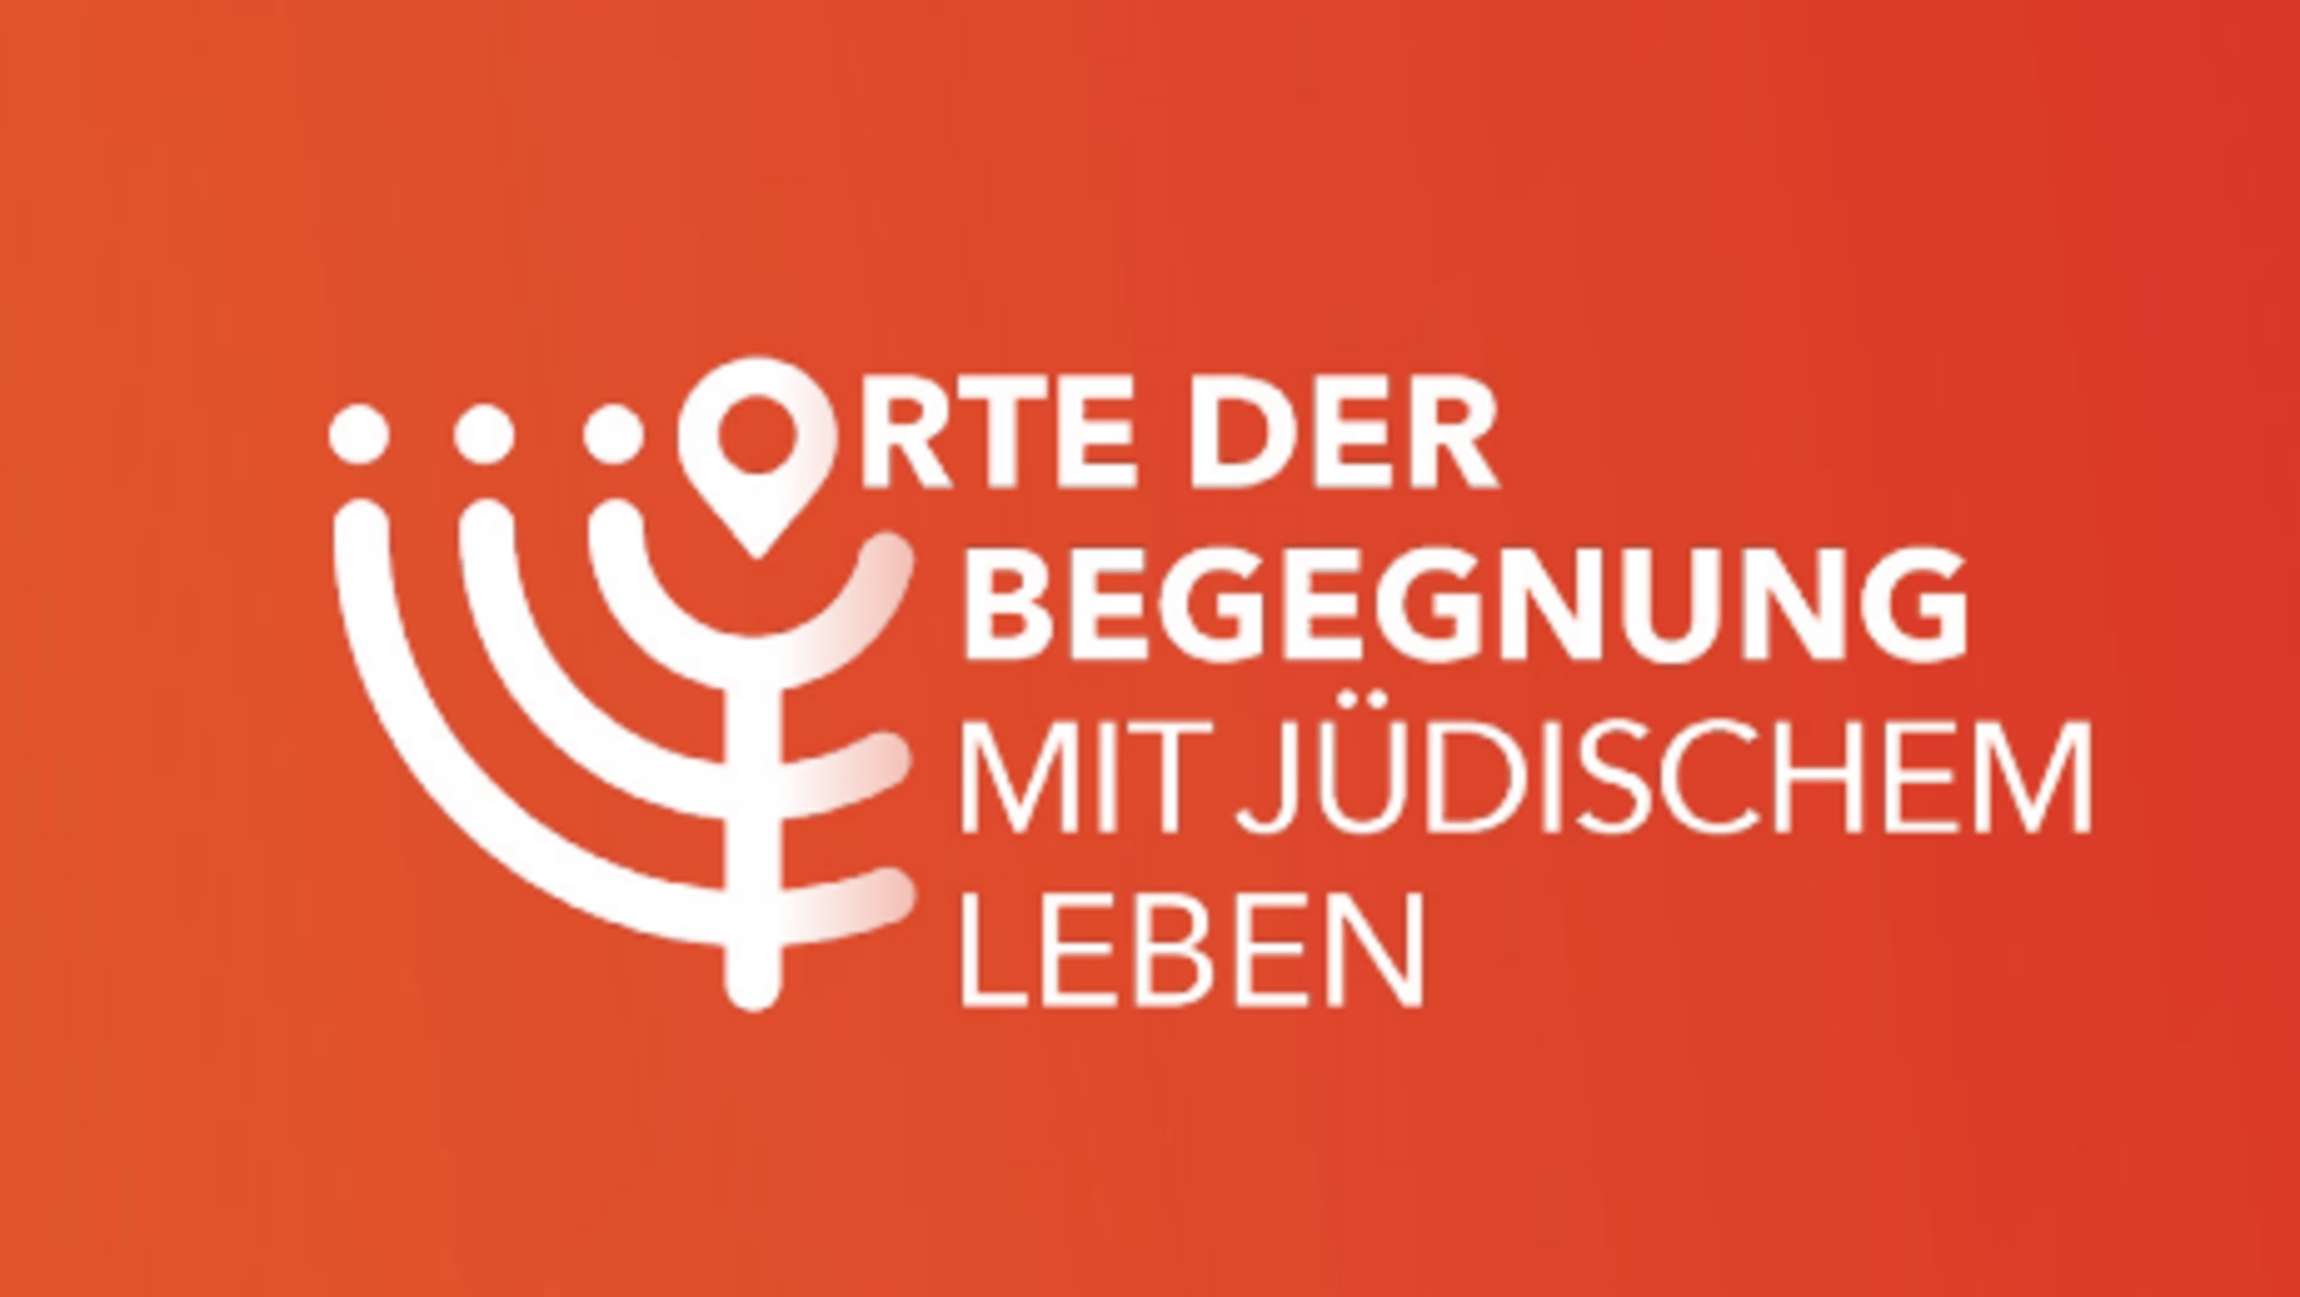 23-07-20-logo-orte-begegnung-mit-juedischem-leben